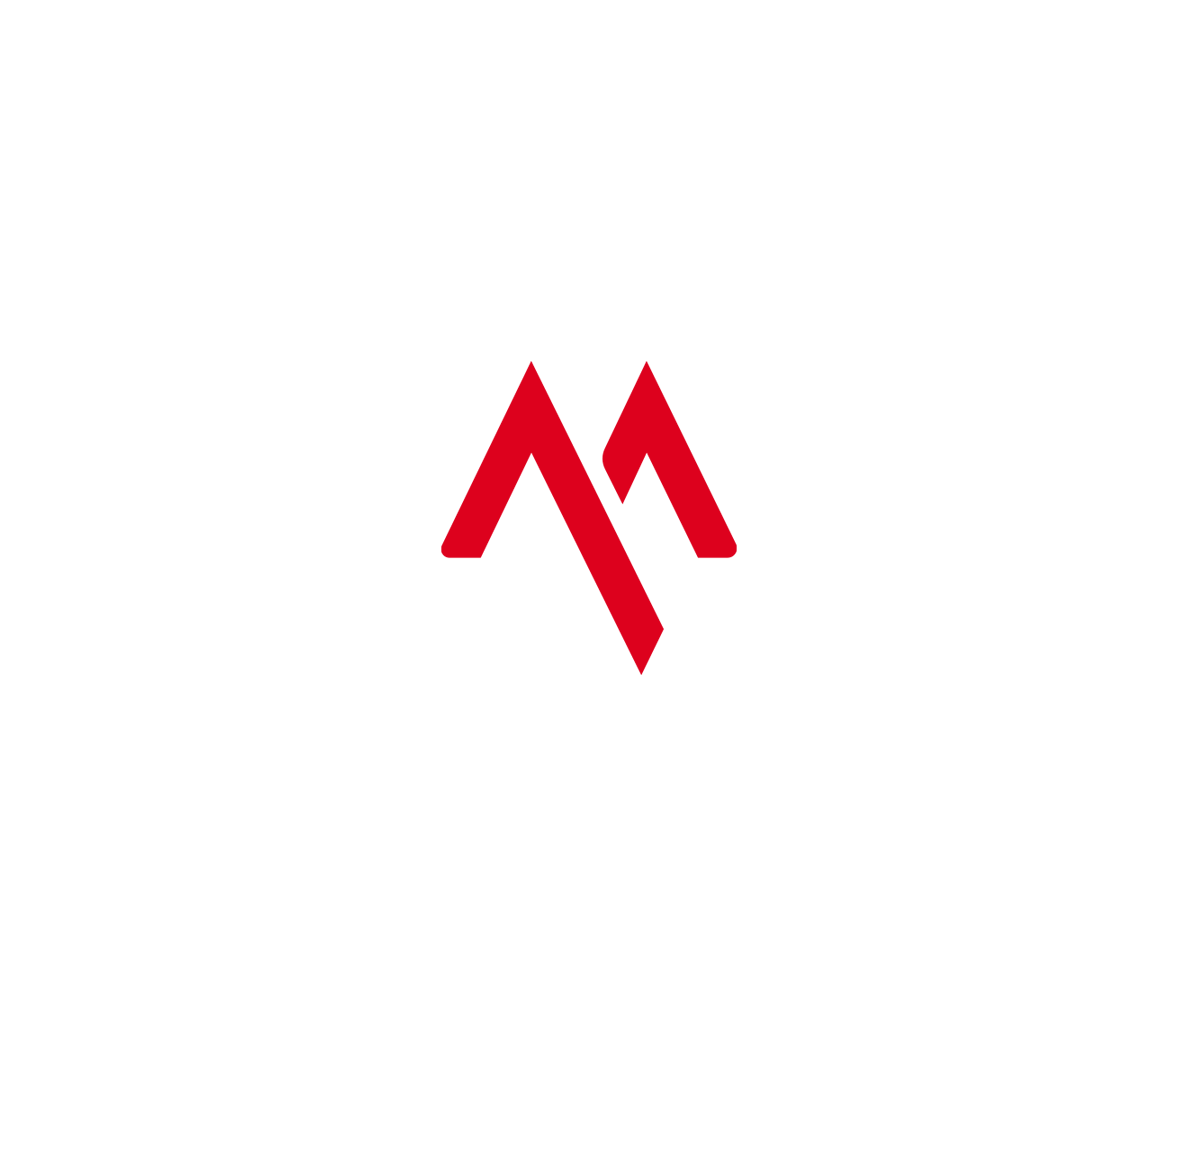 Technomousse